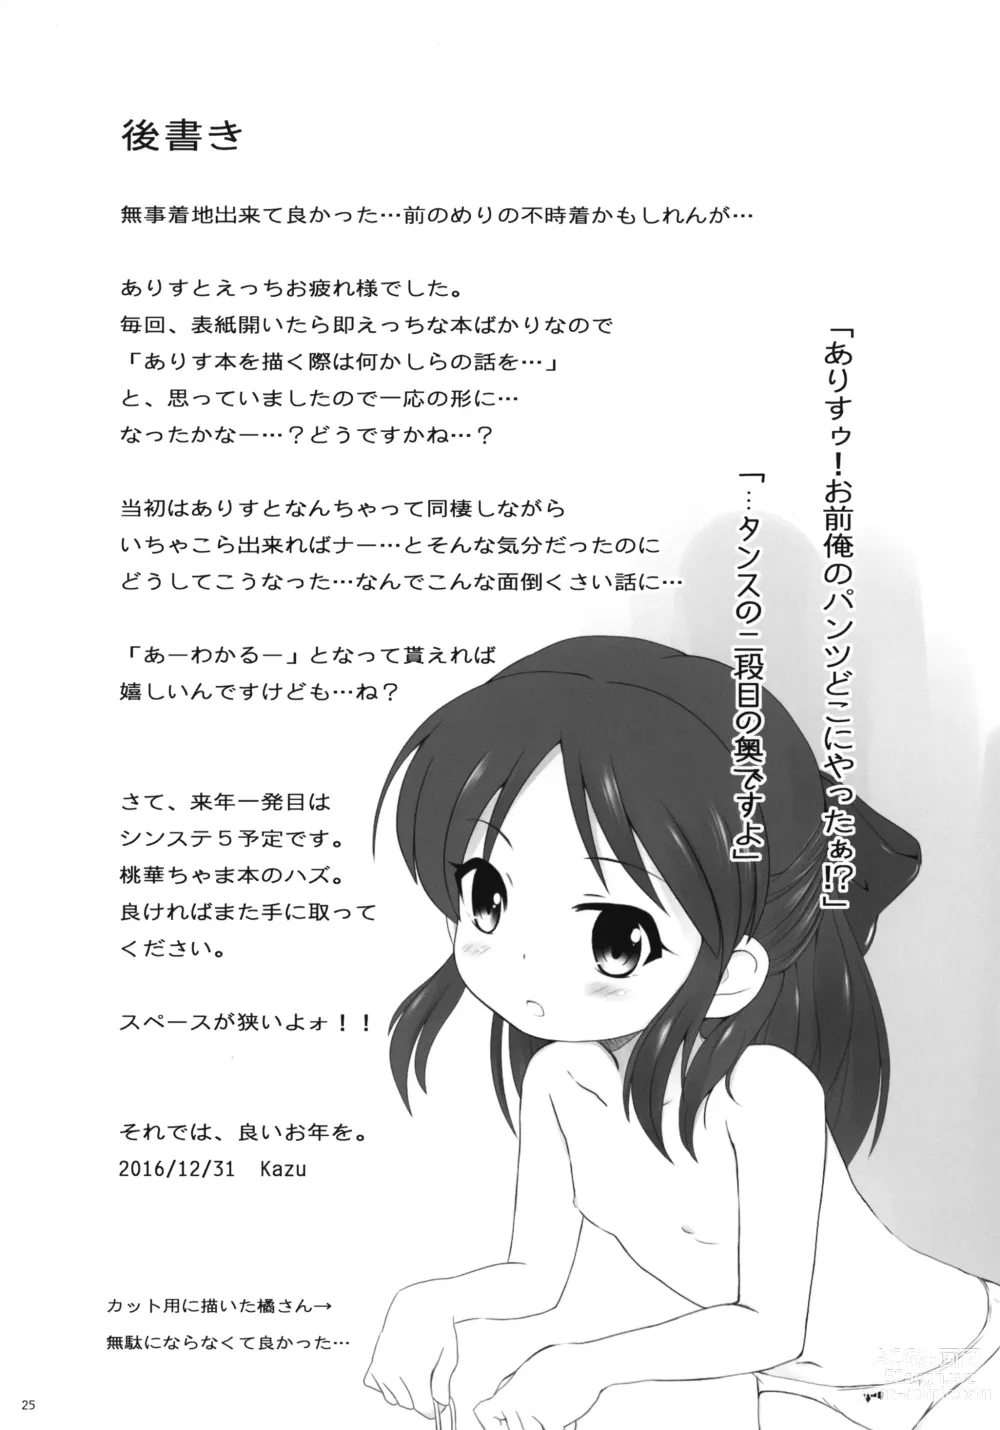 Page 25 of doujinshi Arisu Ecchi